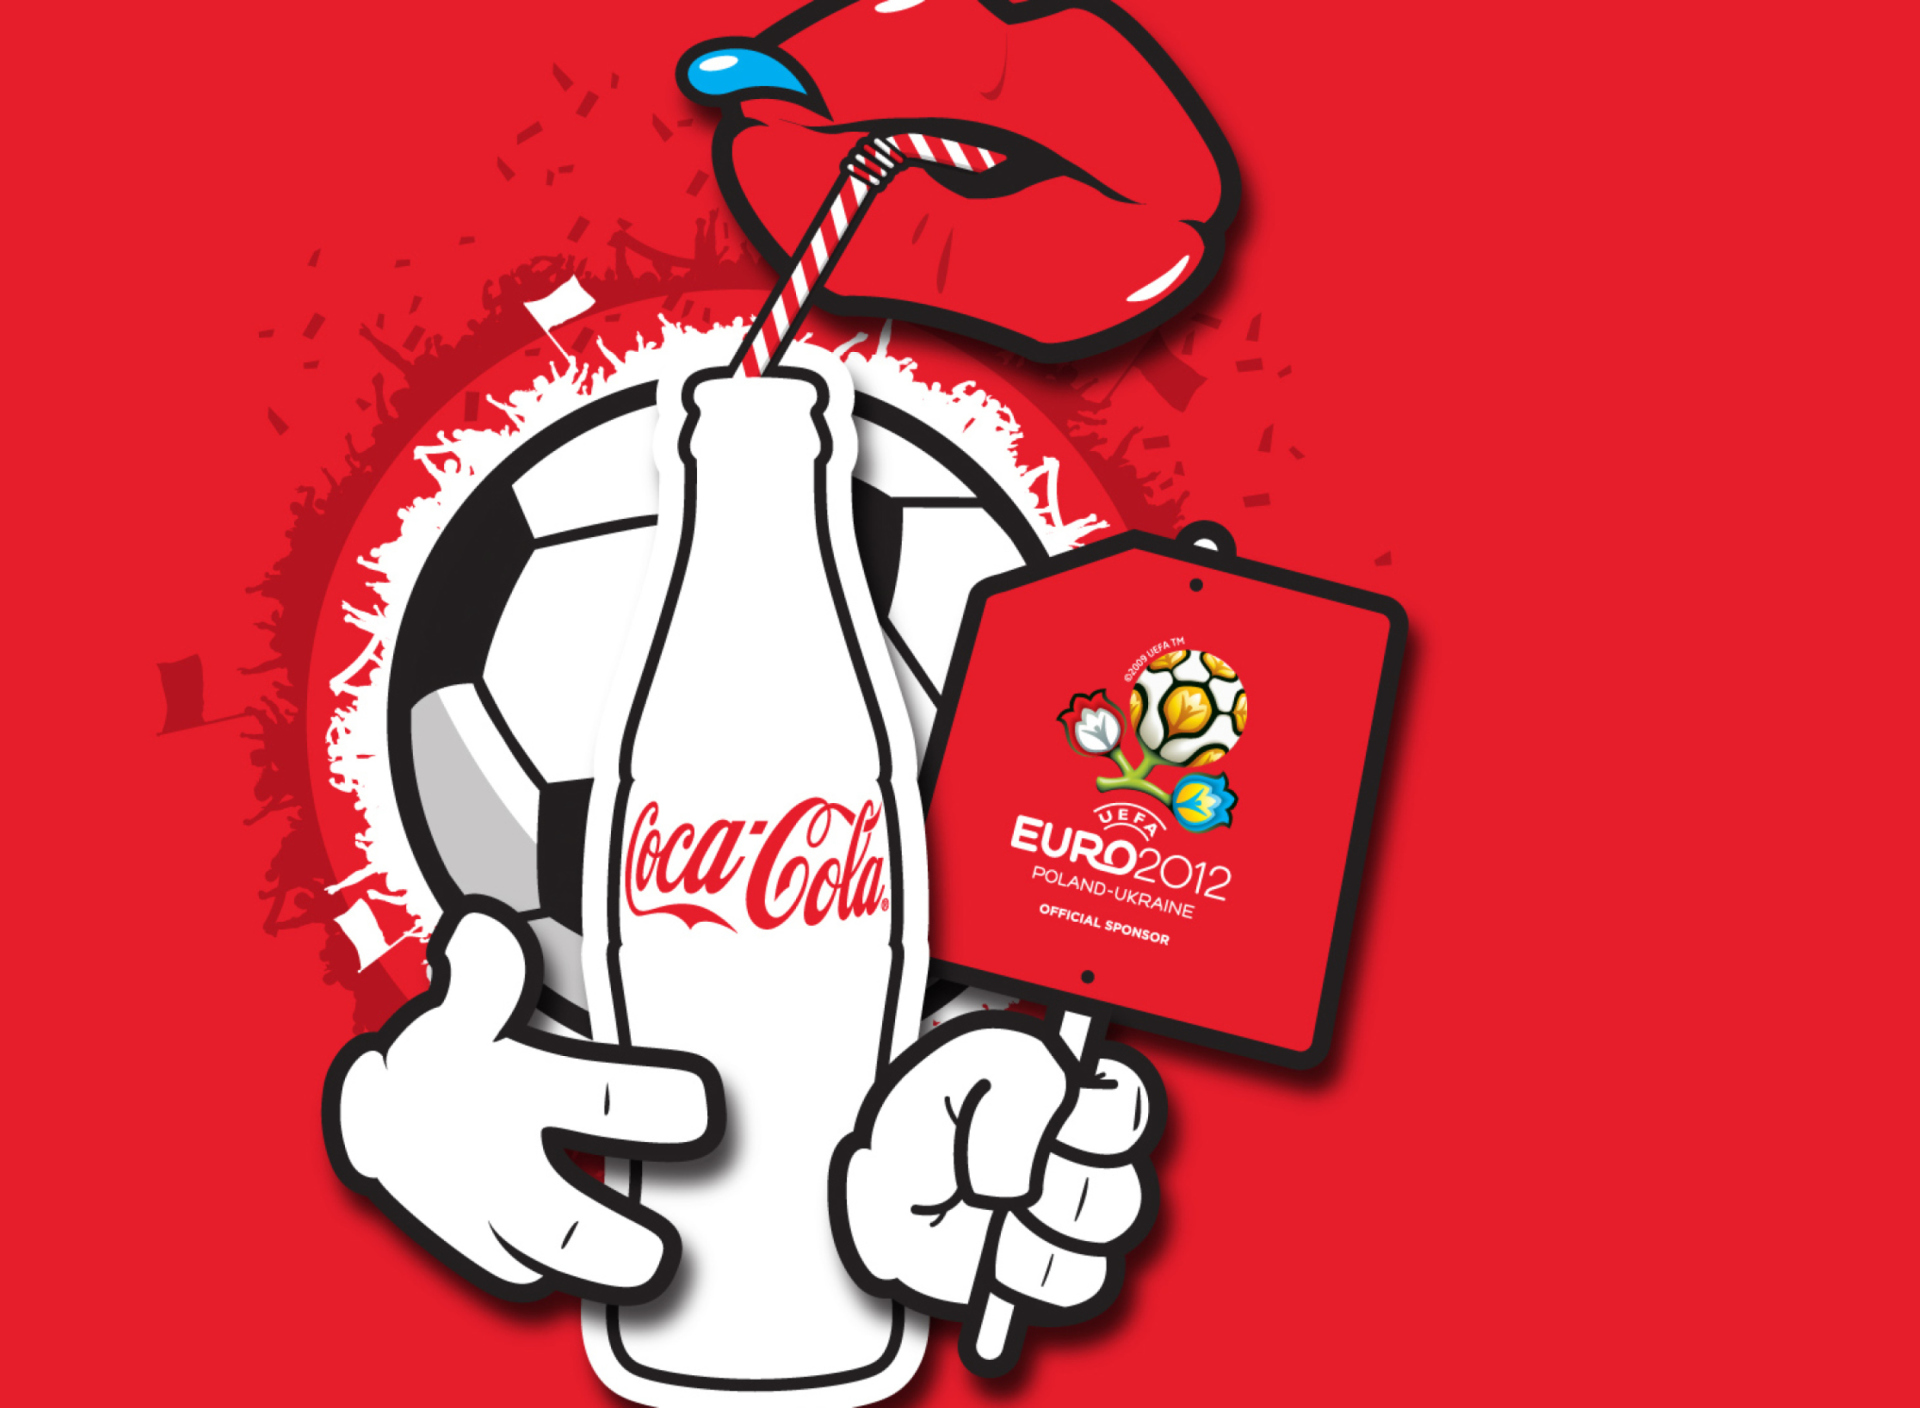 Coca Cola & Euro 2012 full hd wallpaper 1920x1408